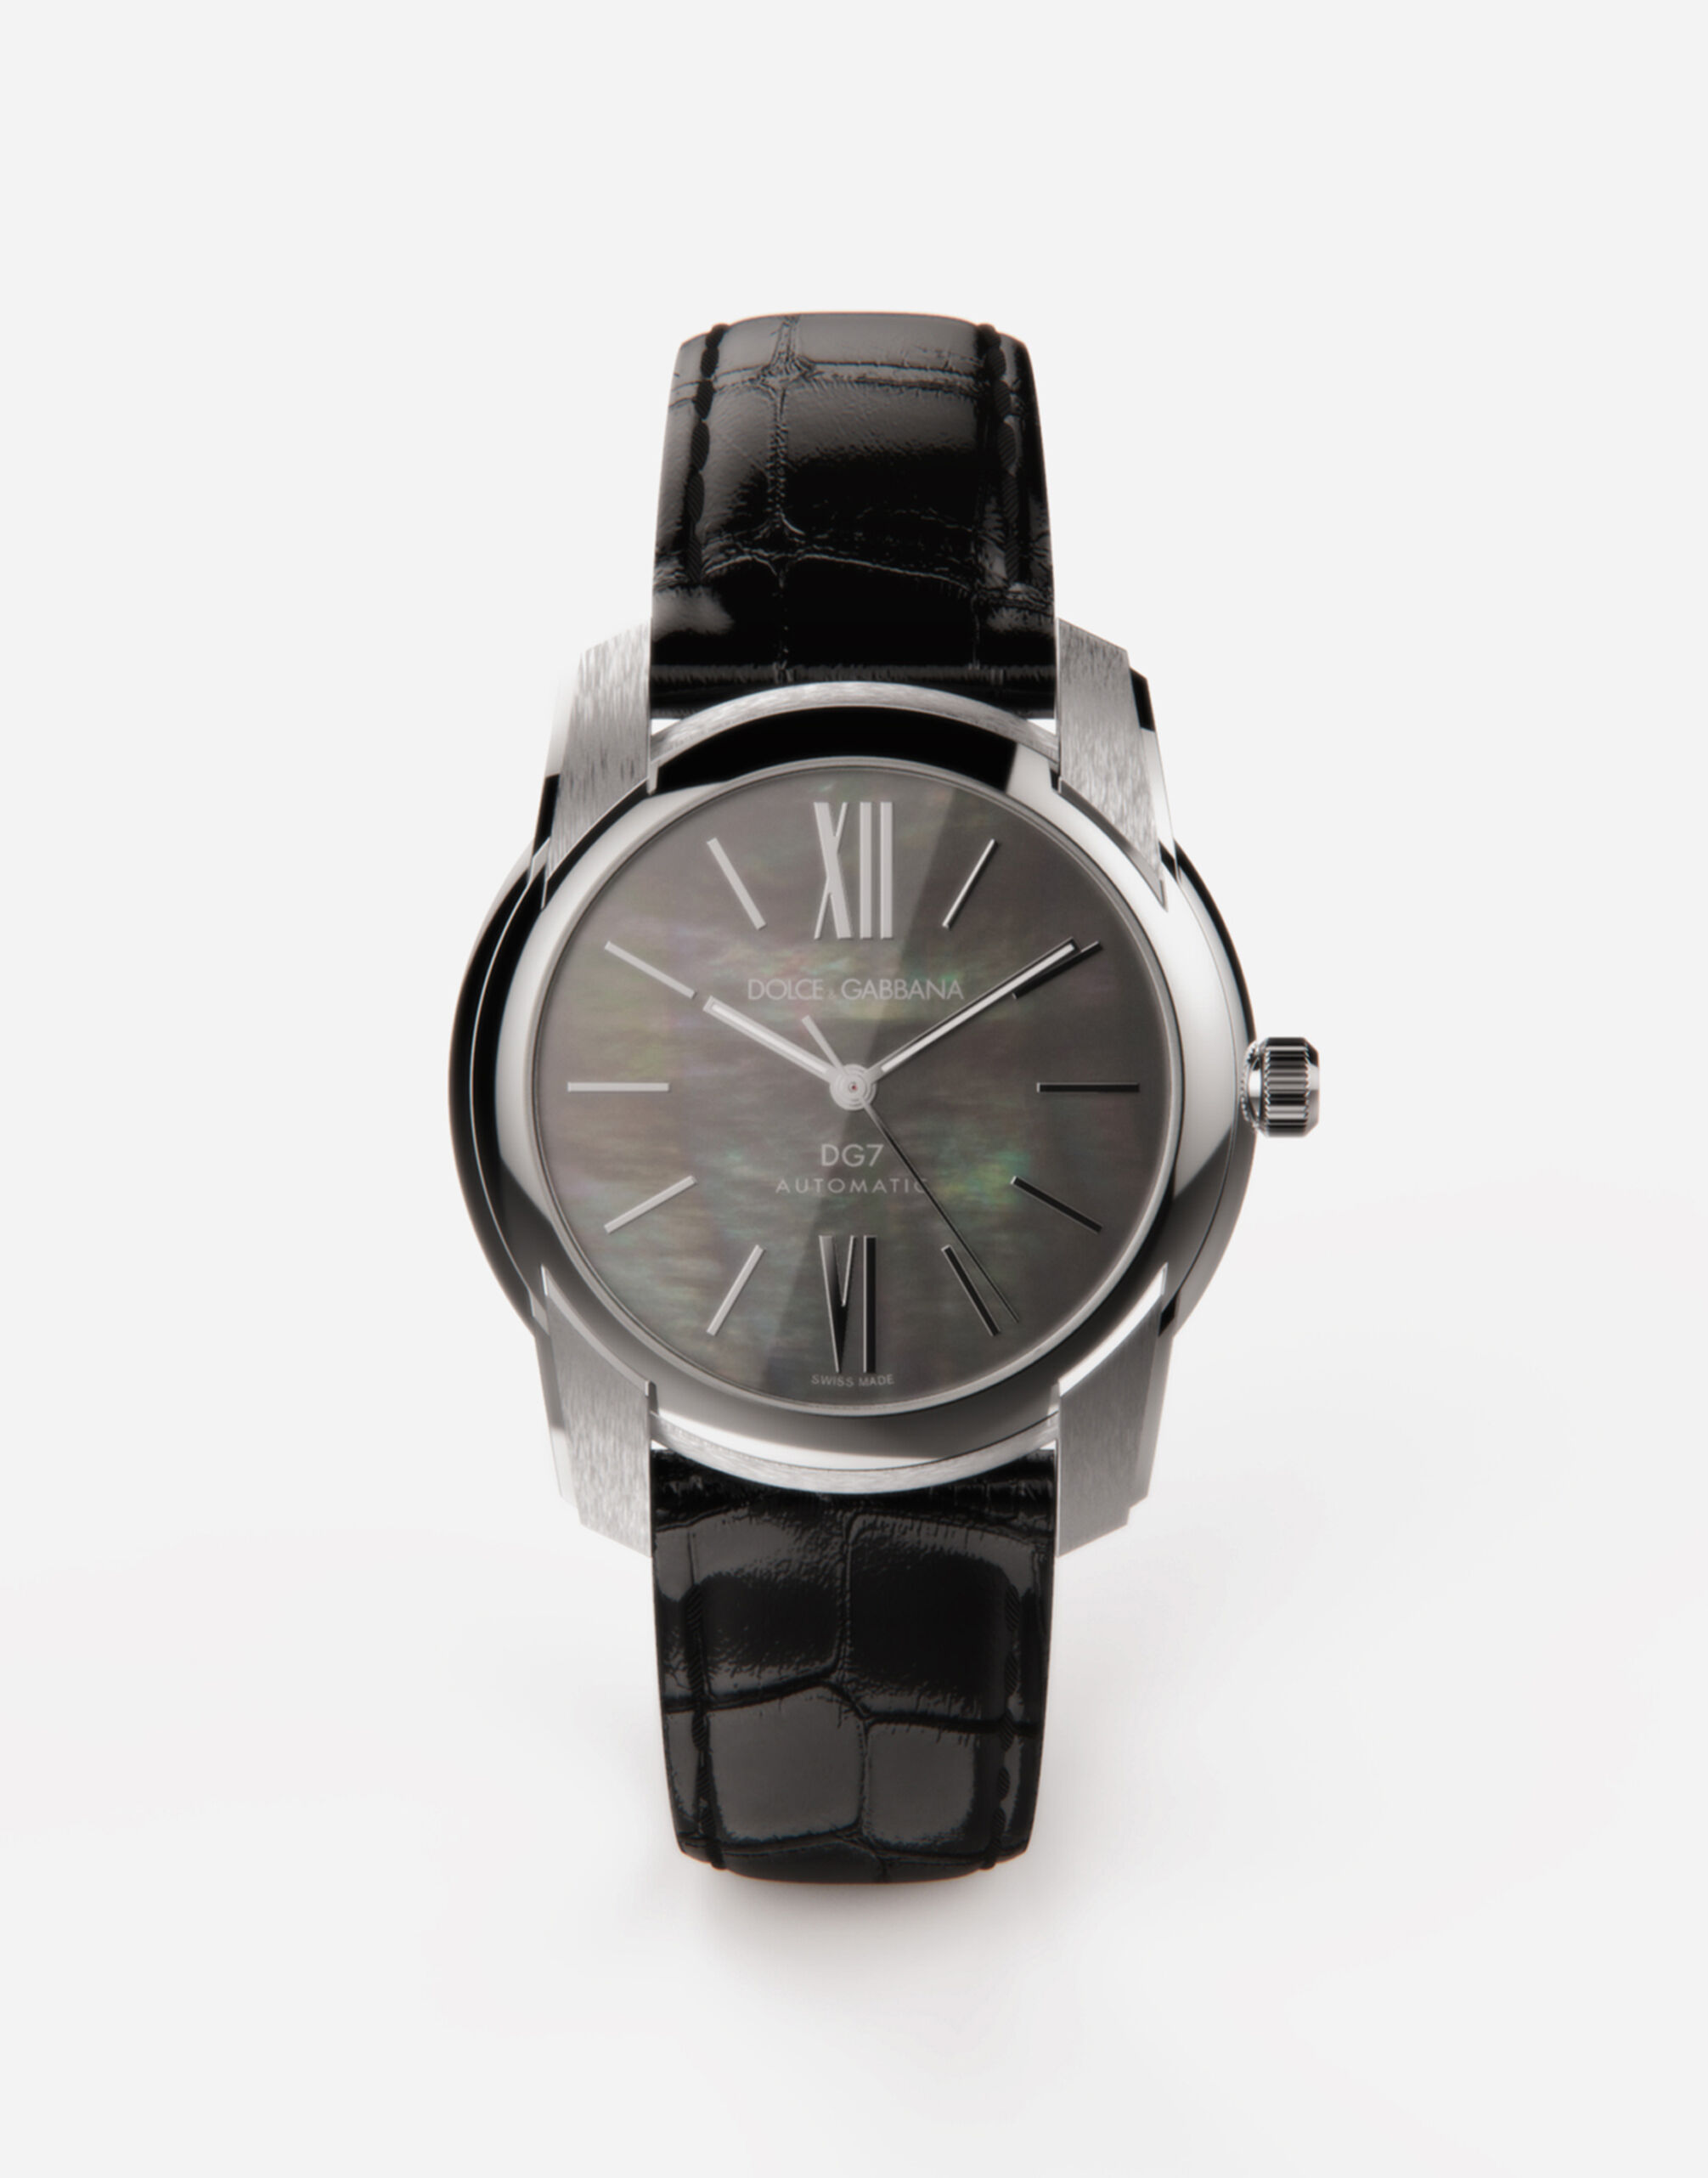 Dolce & Gabbana Часы DG7 из стали с черным перламутром ЗОЛОТОЙ WALK5GWYE01